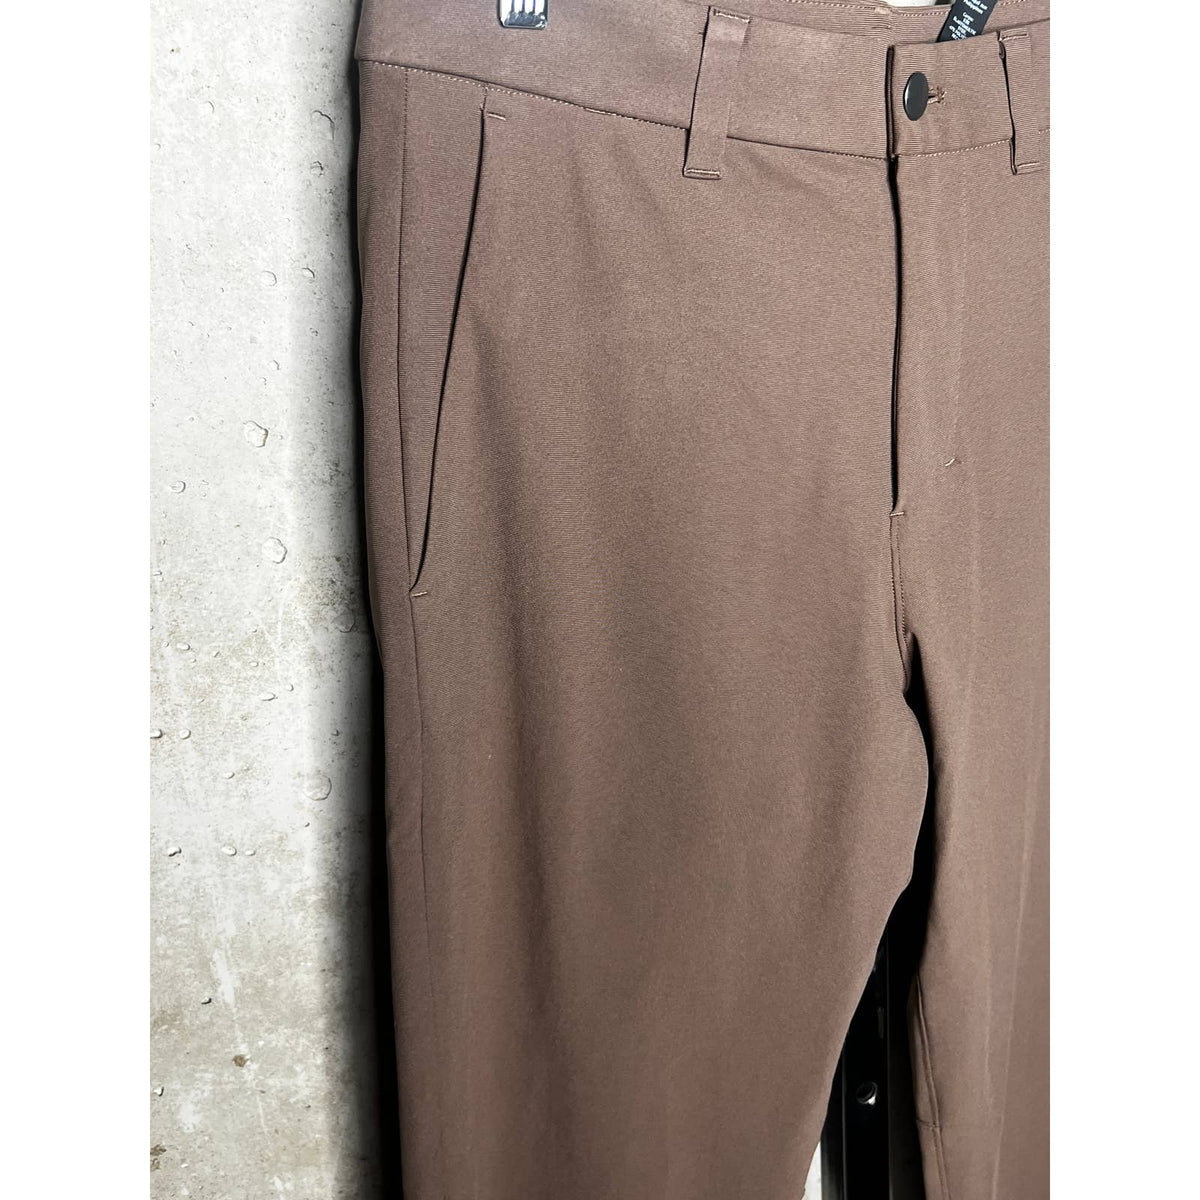 Lululemon ABC 32” Brown Men’s Pants Sz.30